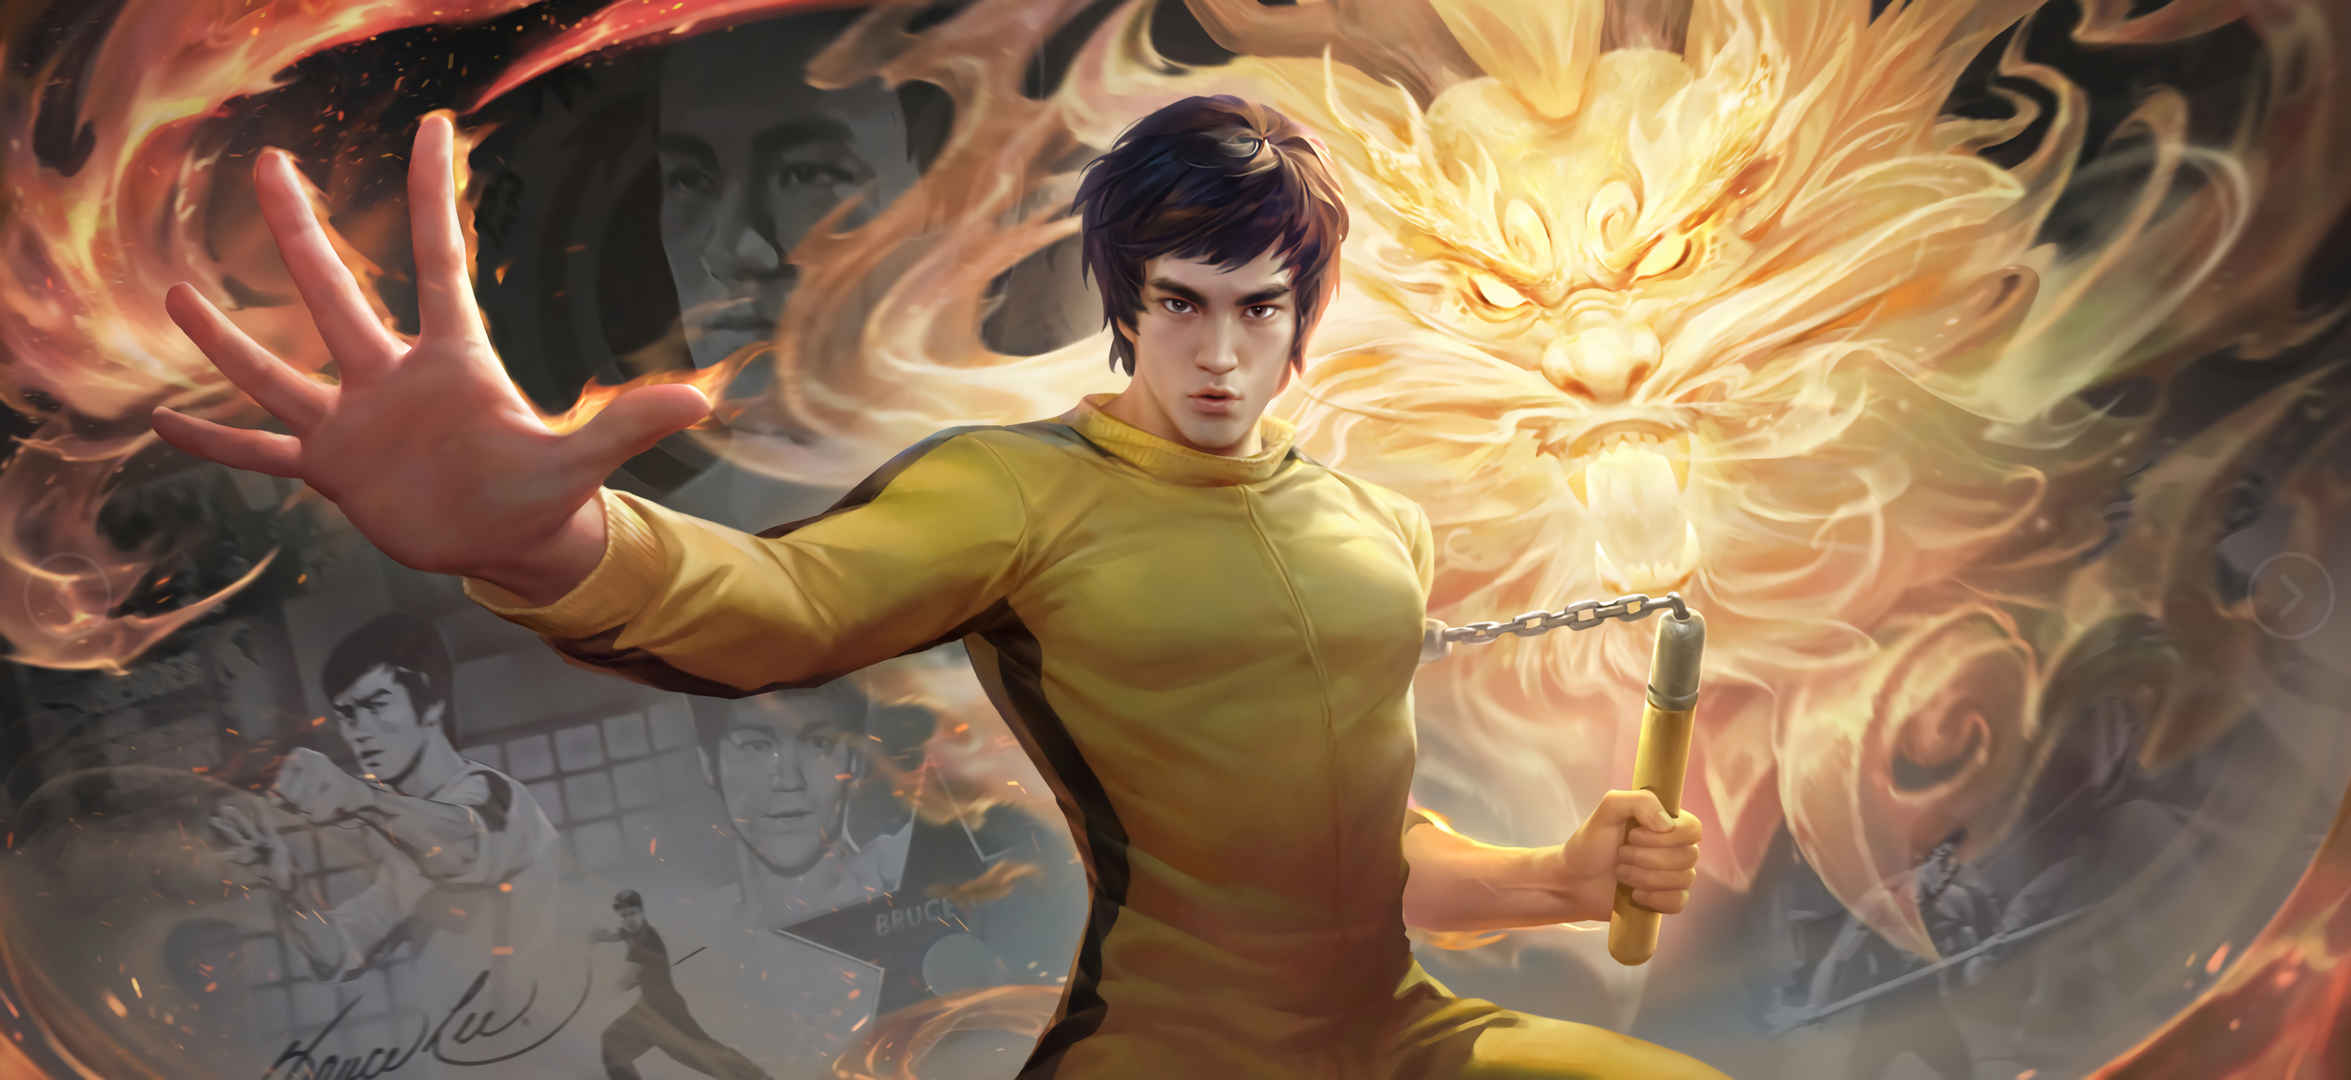 Bruce Lee-Pei Qiu Tiger King Glory 4K Wallpaper